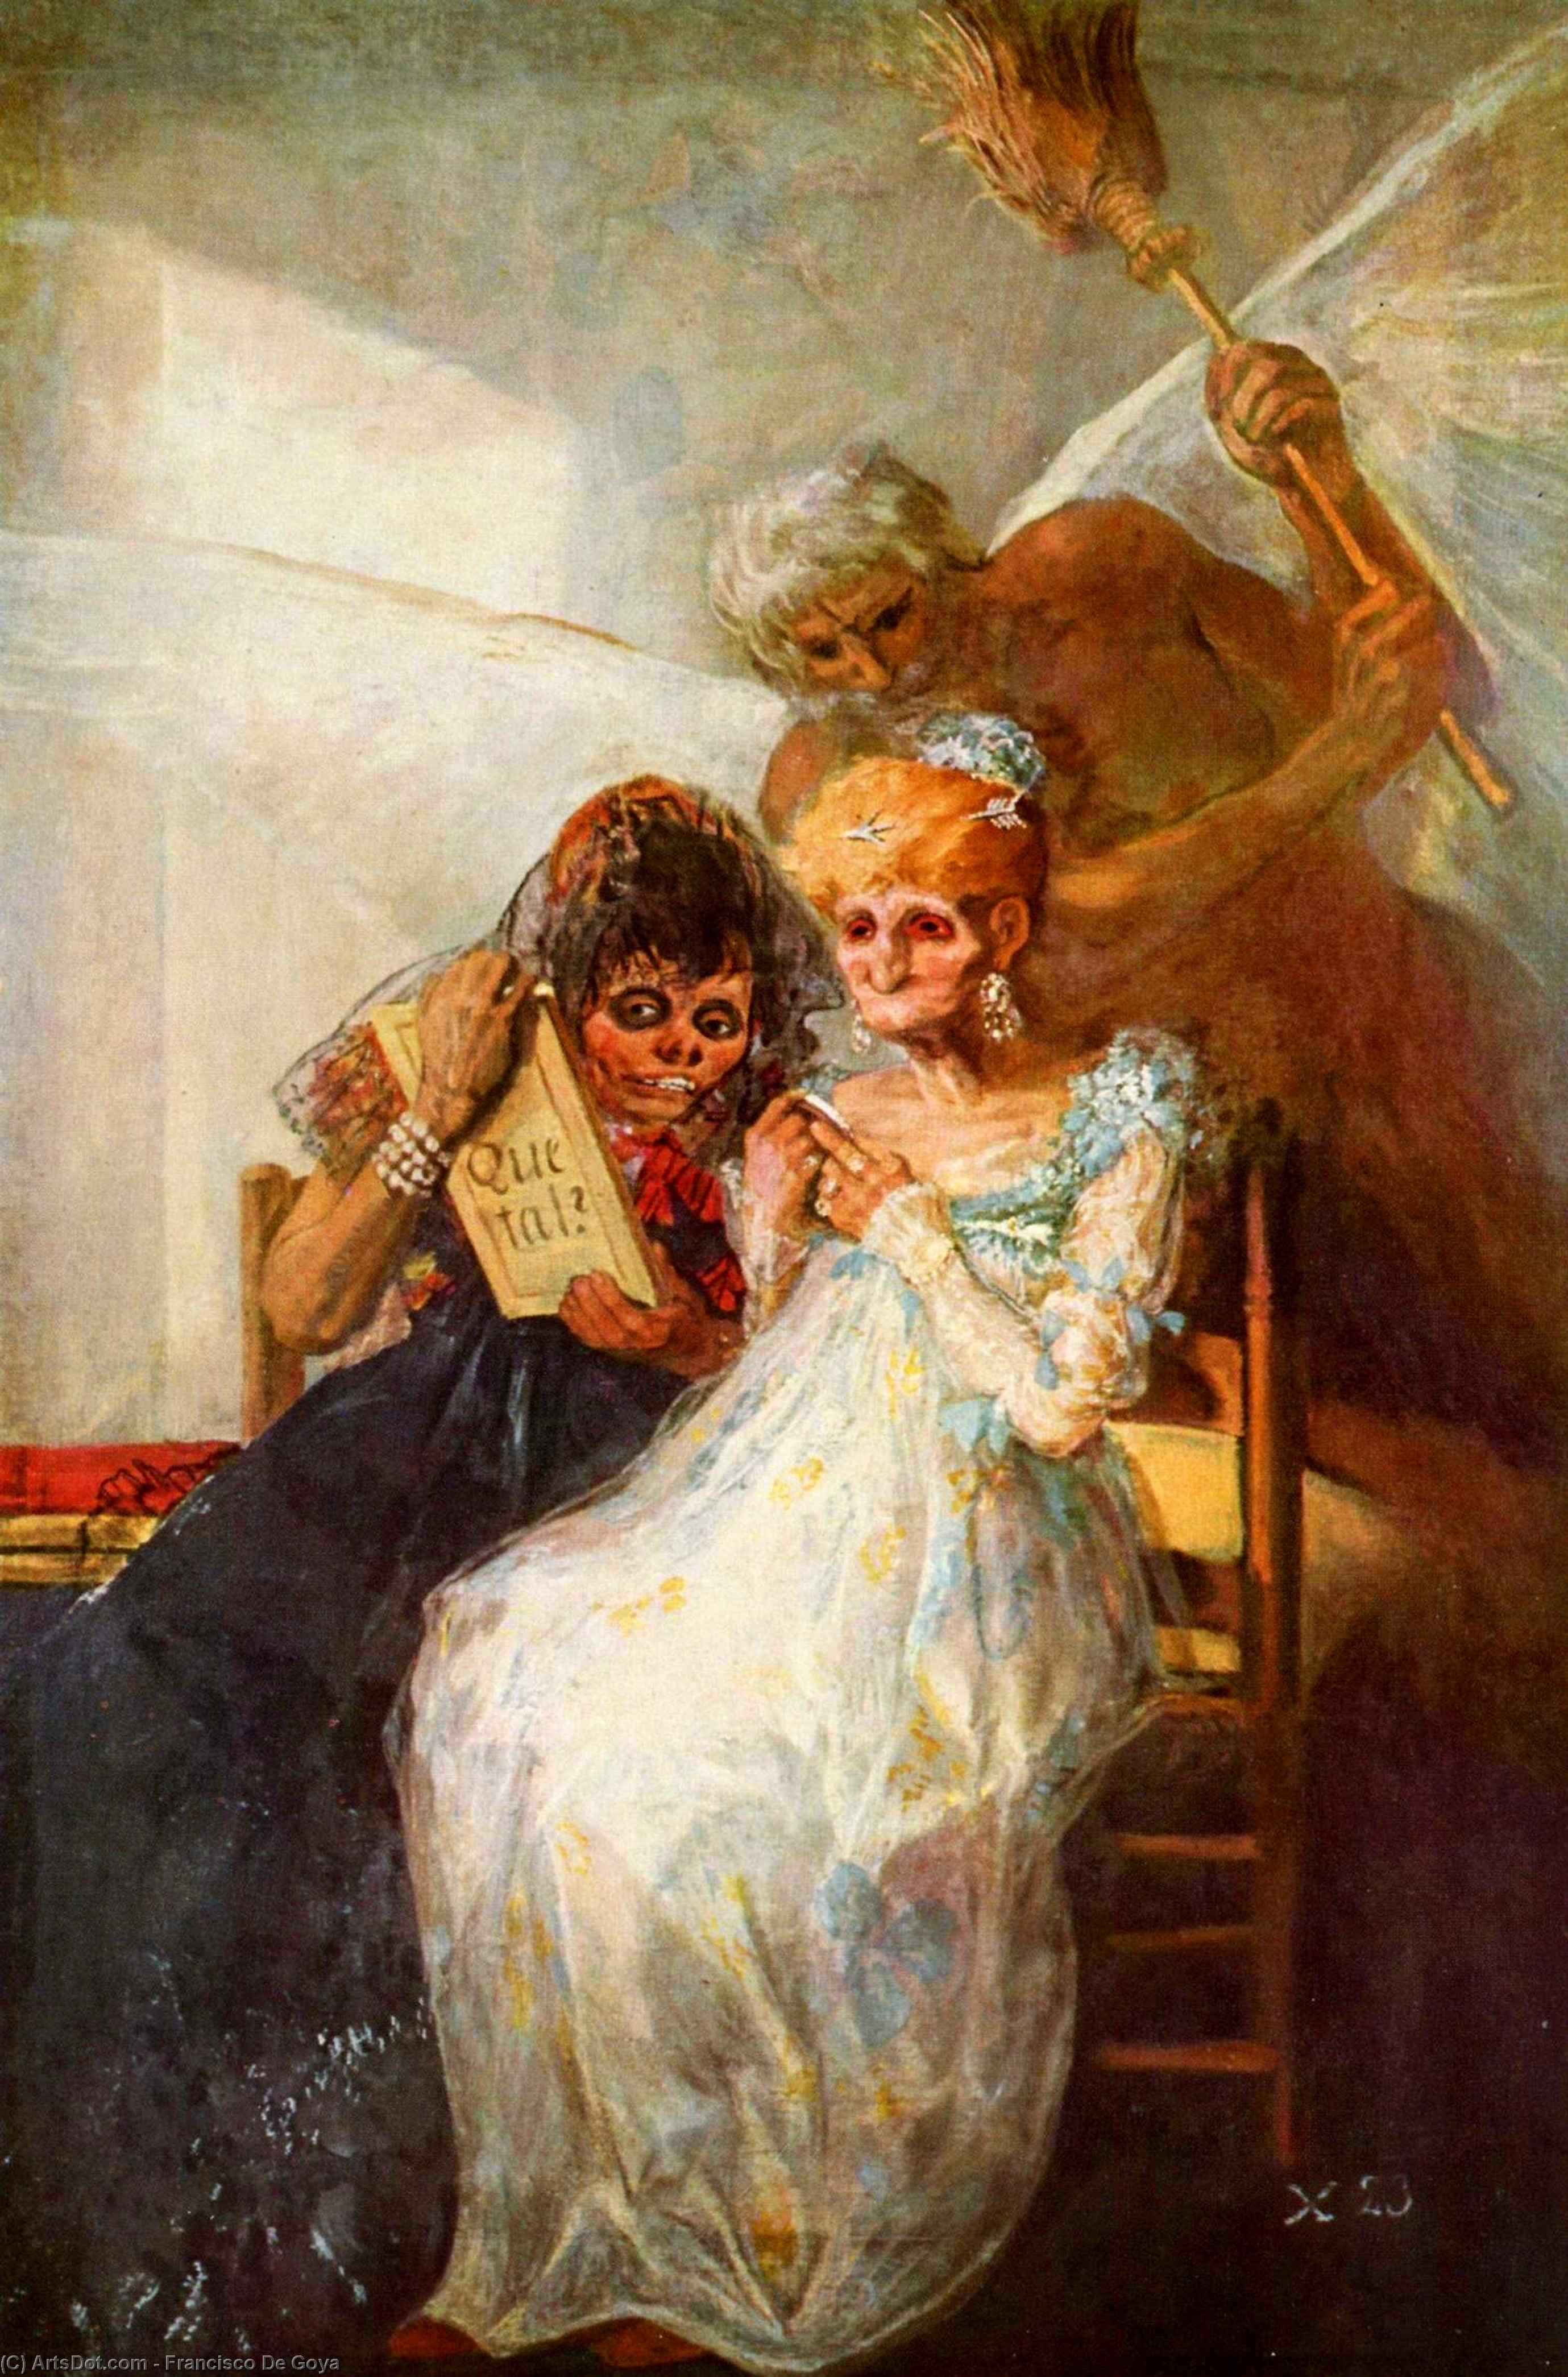 WikiOO.org - Encyclopedia of Fine Arts - Maleri, Artwork Francisco De Goya - Time of the Old Women